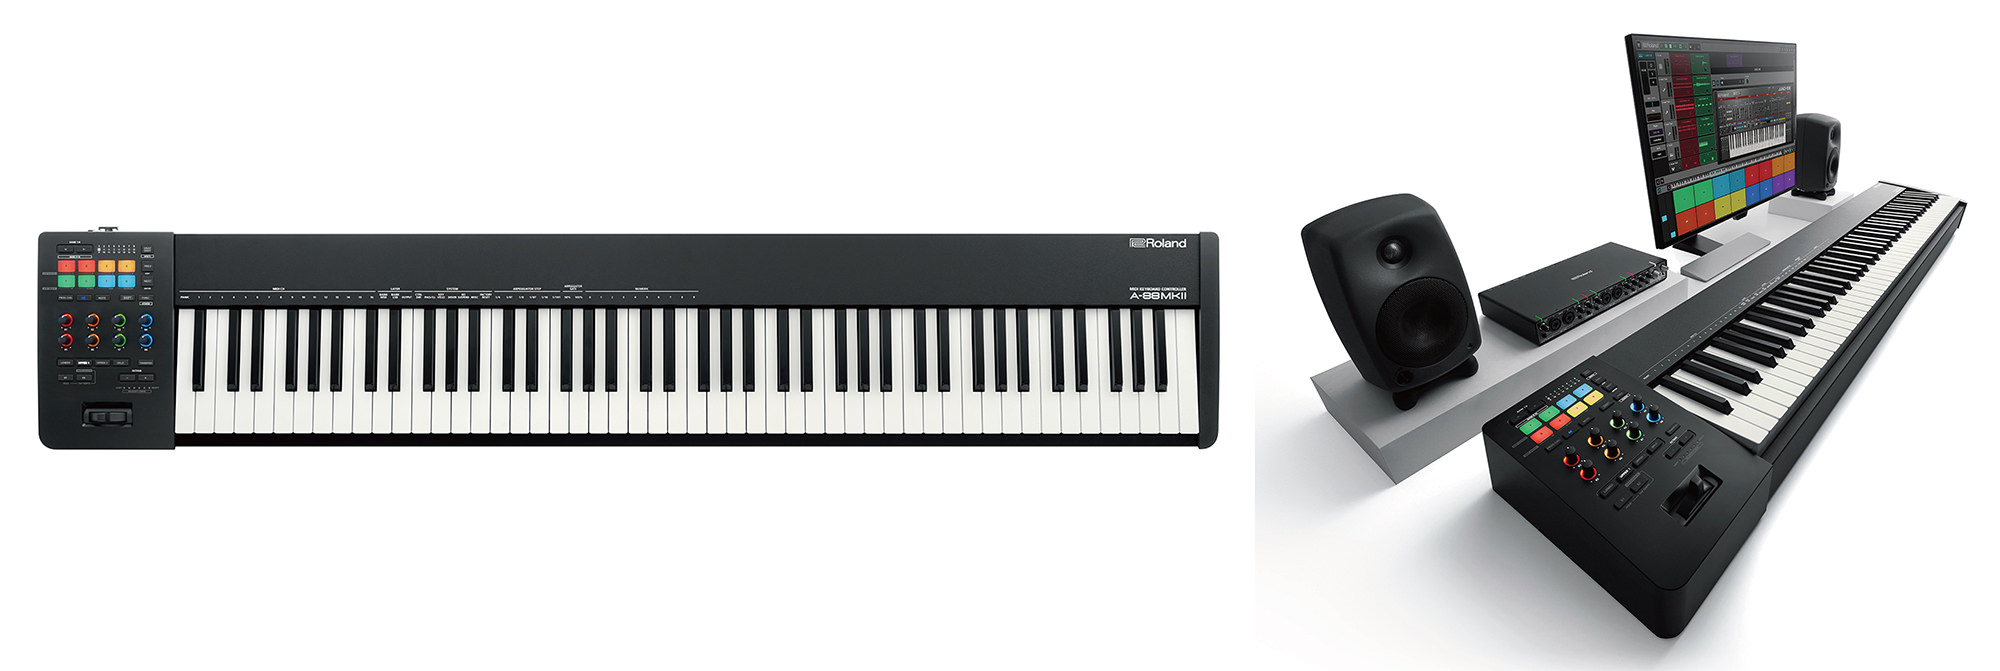 未来の電子ピアノを提案する
デジタル・コンサート・グランドピアノの
コンセプト・モデルを家電見本市「CES 2020」に出展